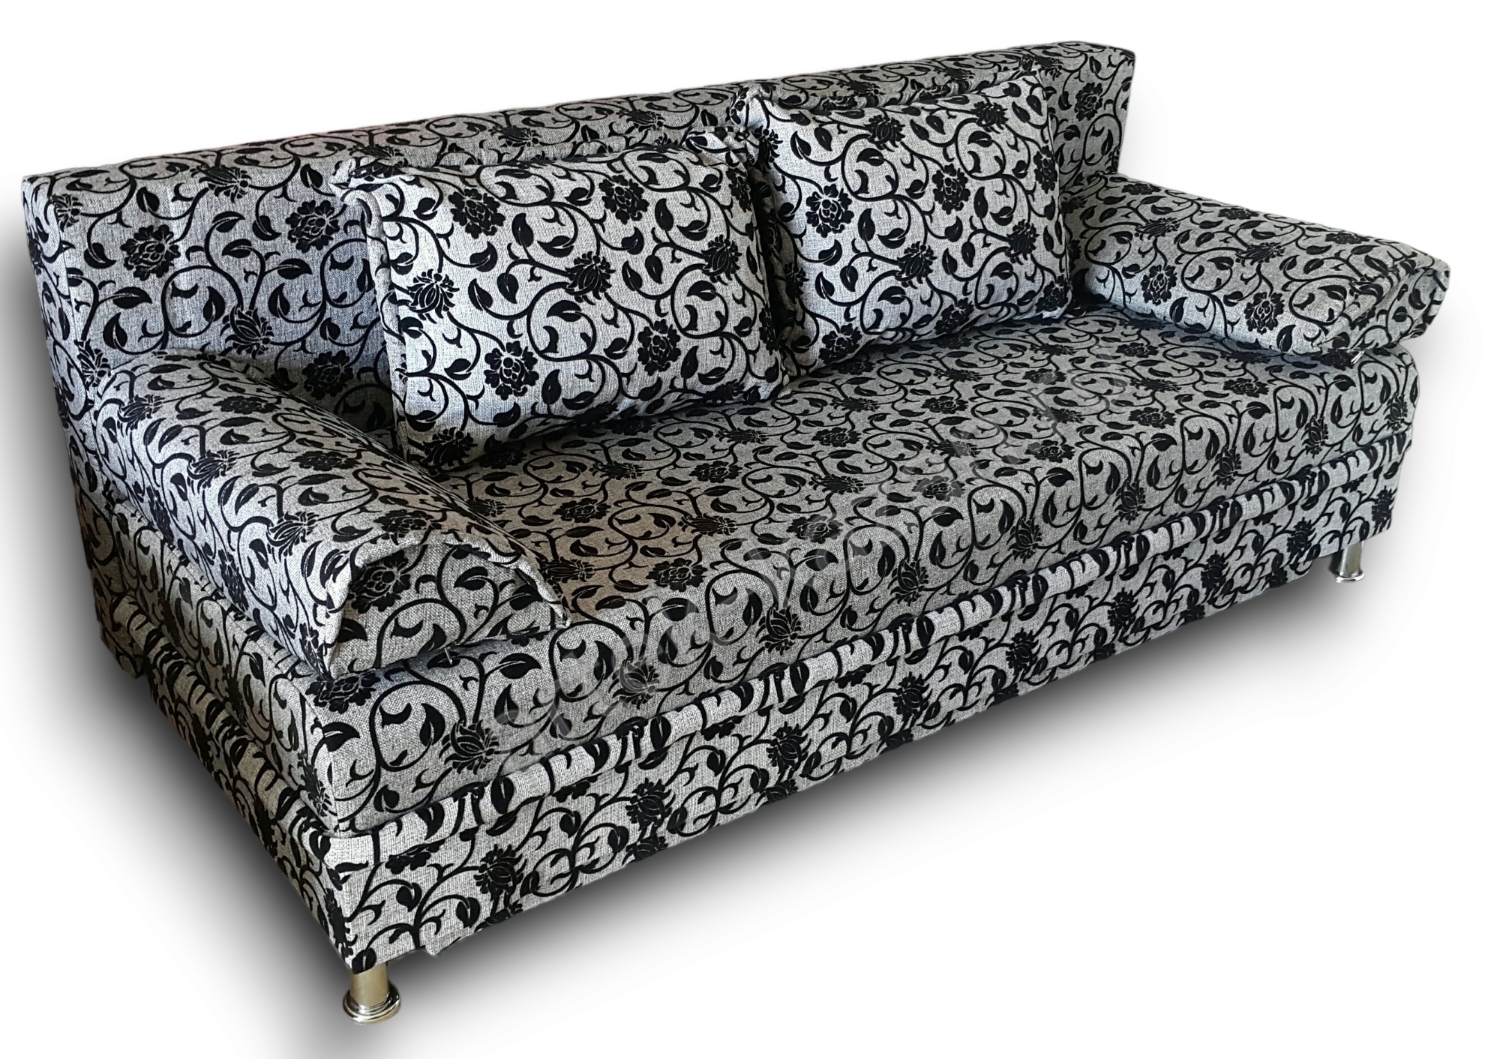 диван еврокнижка Эконом фото № 15. Купить недорогой диван по низкой цене от производителя можно у нас.